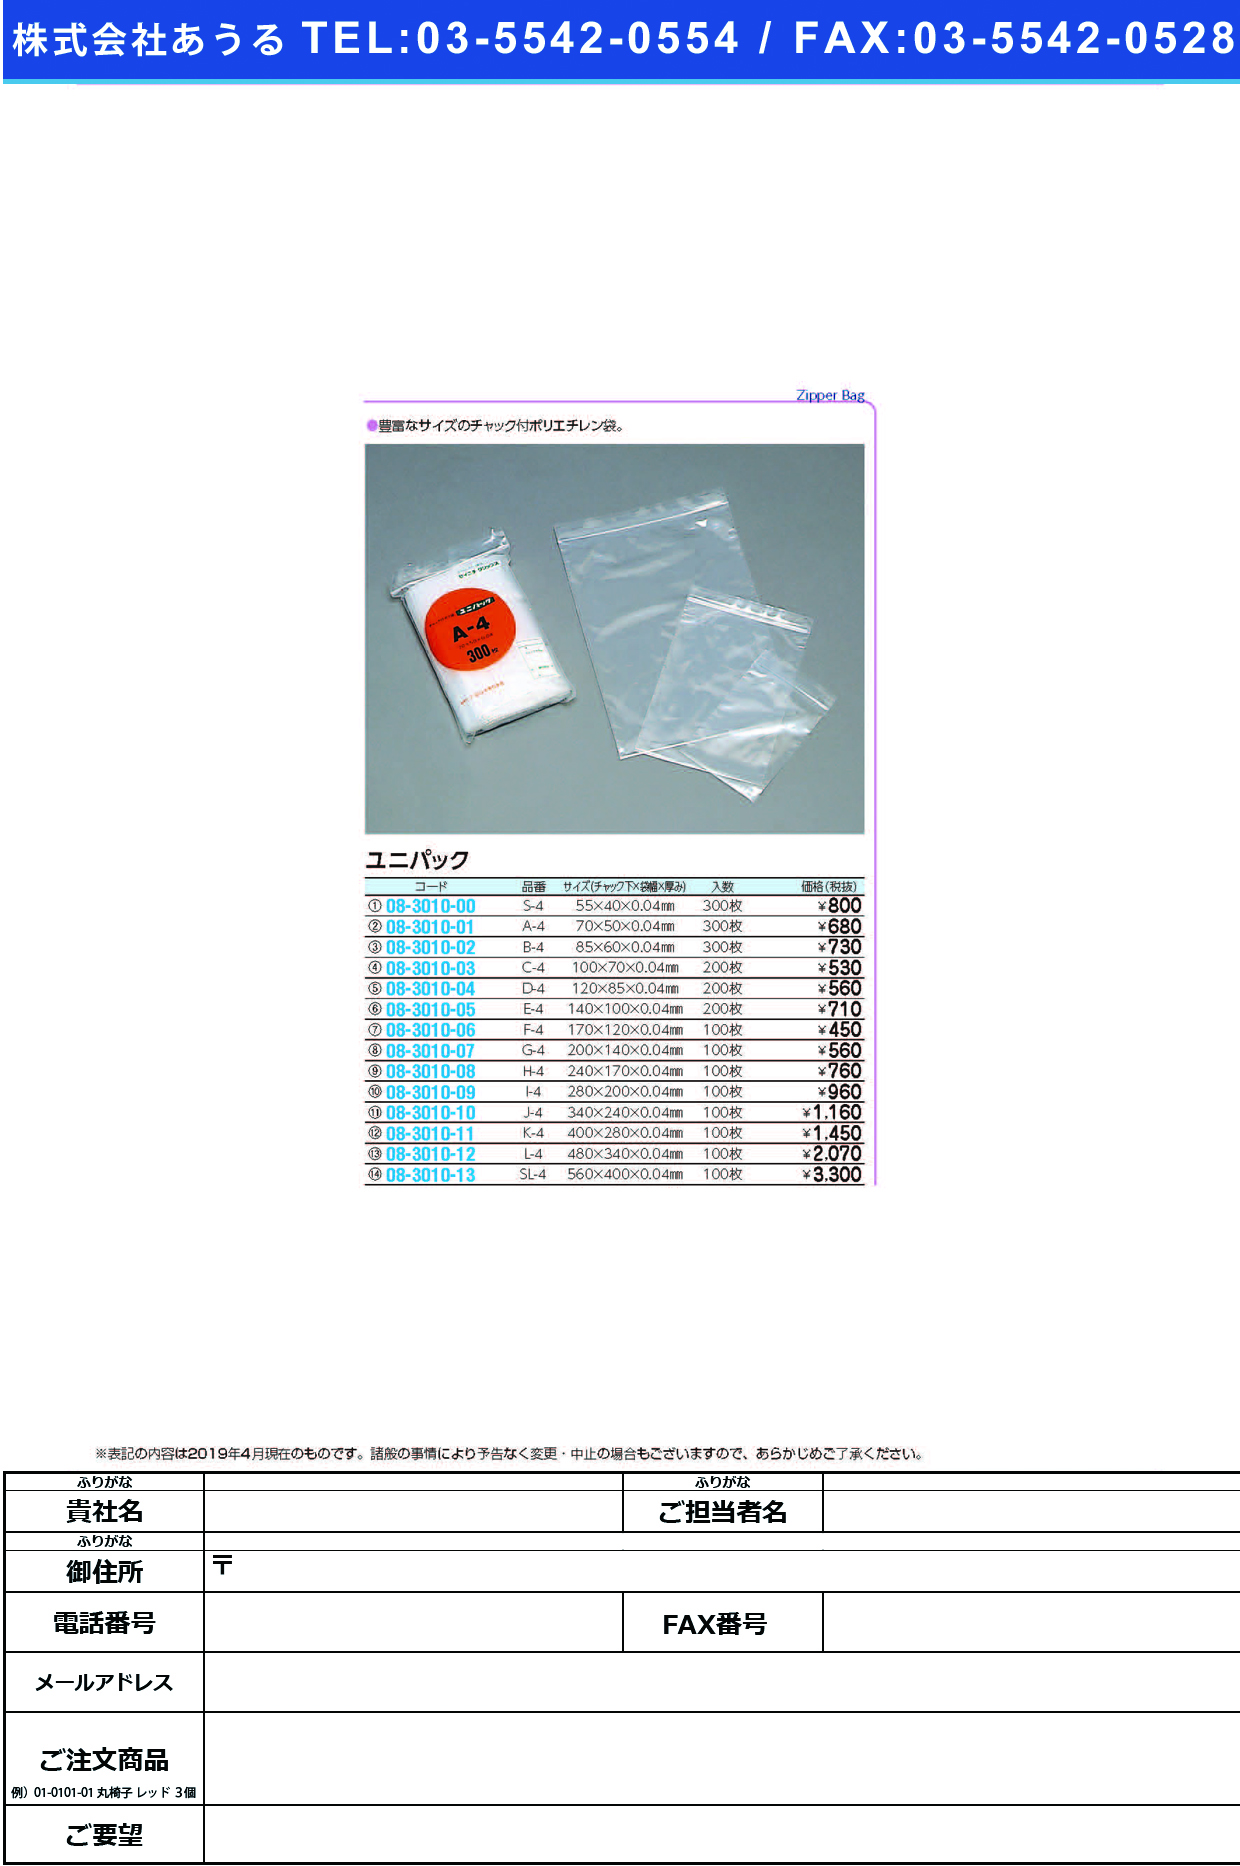 (08-3010-00)ユニパック S-4(55X40MM)300ﾏｲｲﾘ ﾕﾆﾊﾟｯｸ【1袋単位】【2019年カタログ商品】